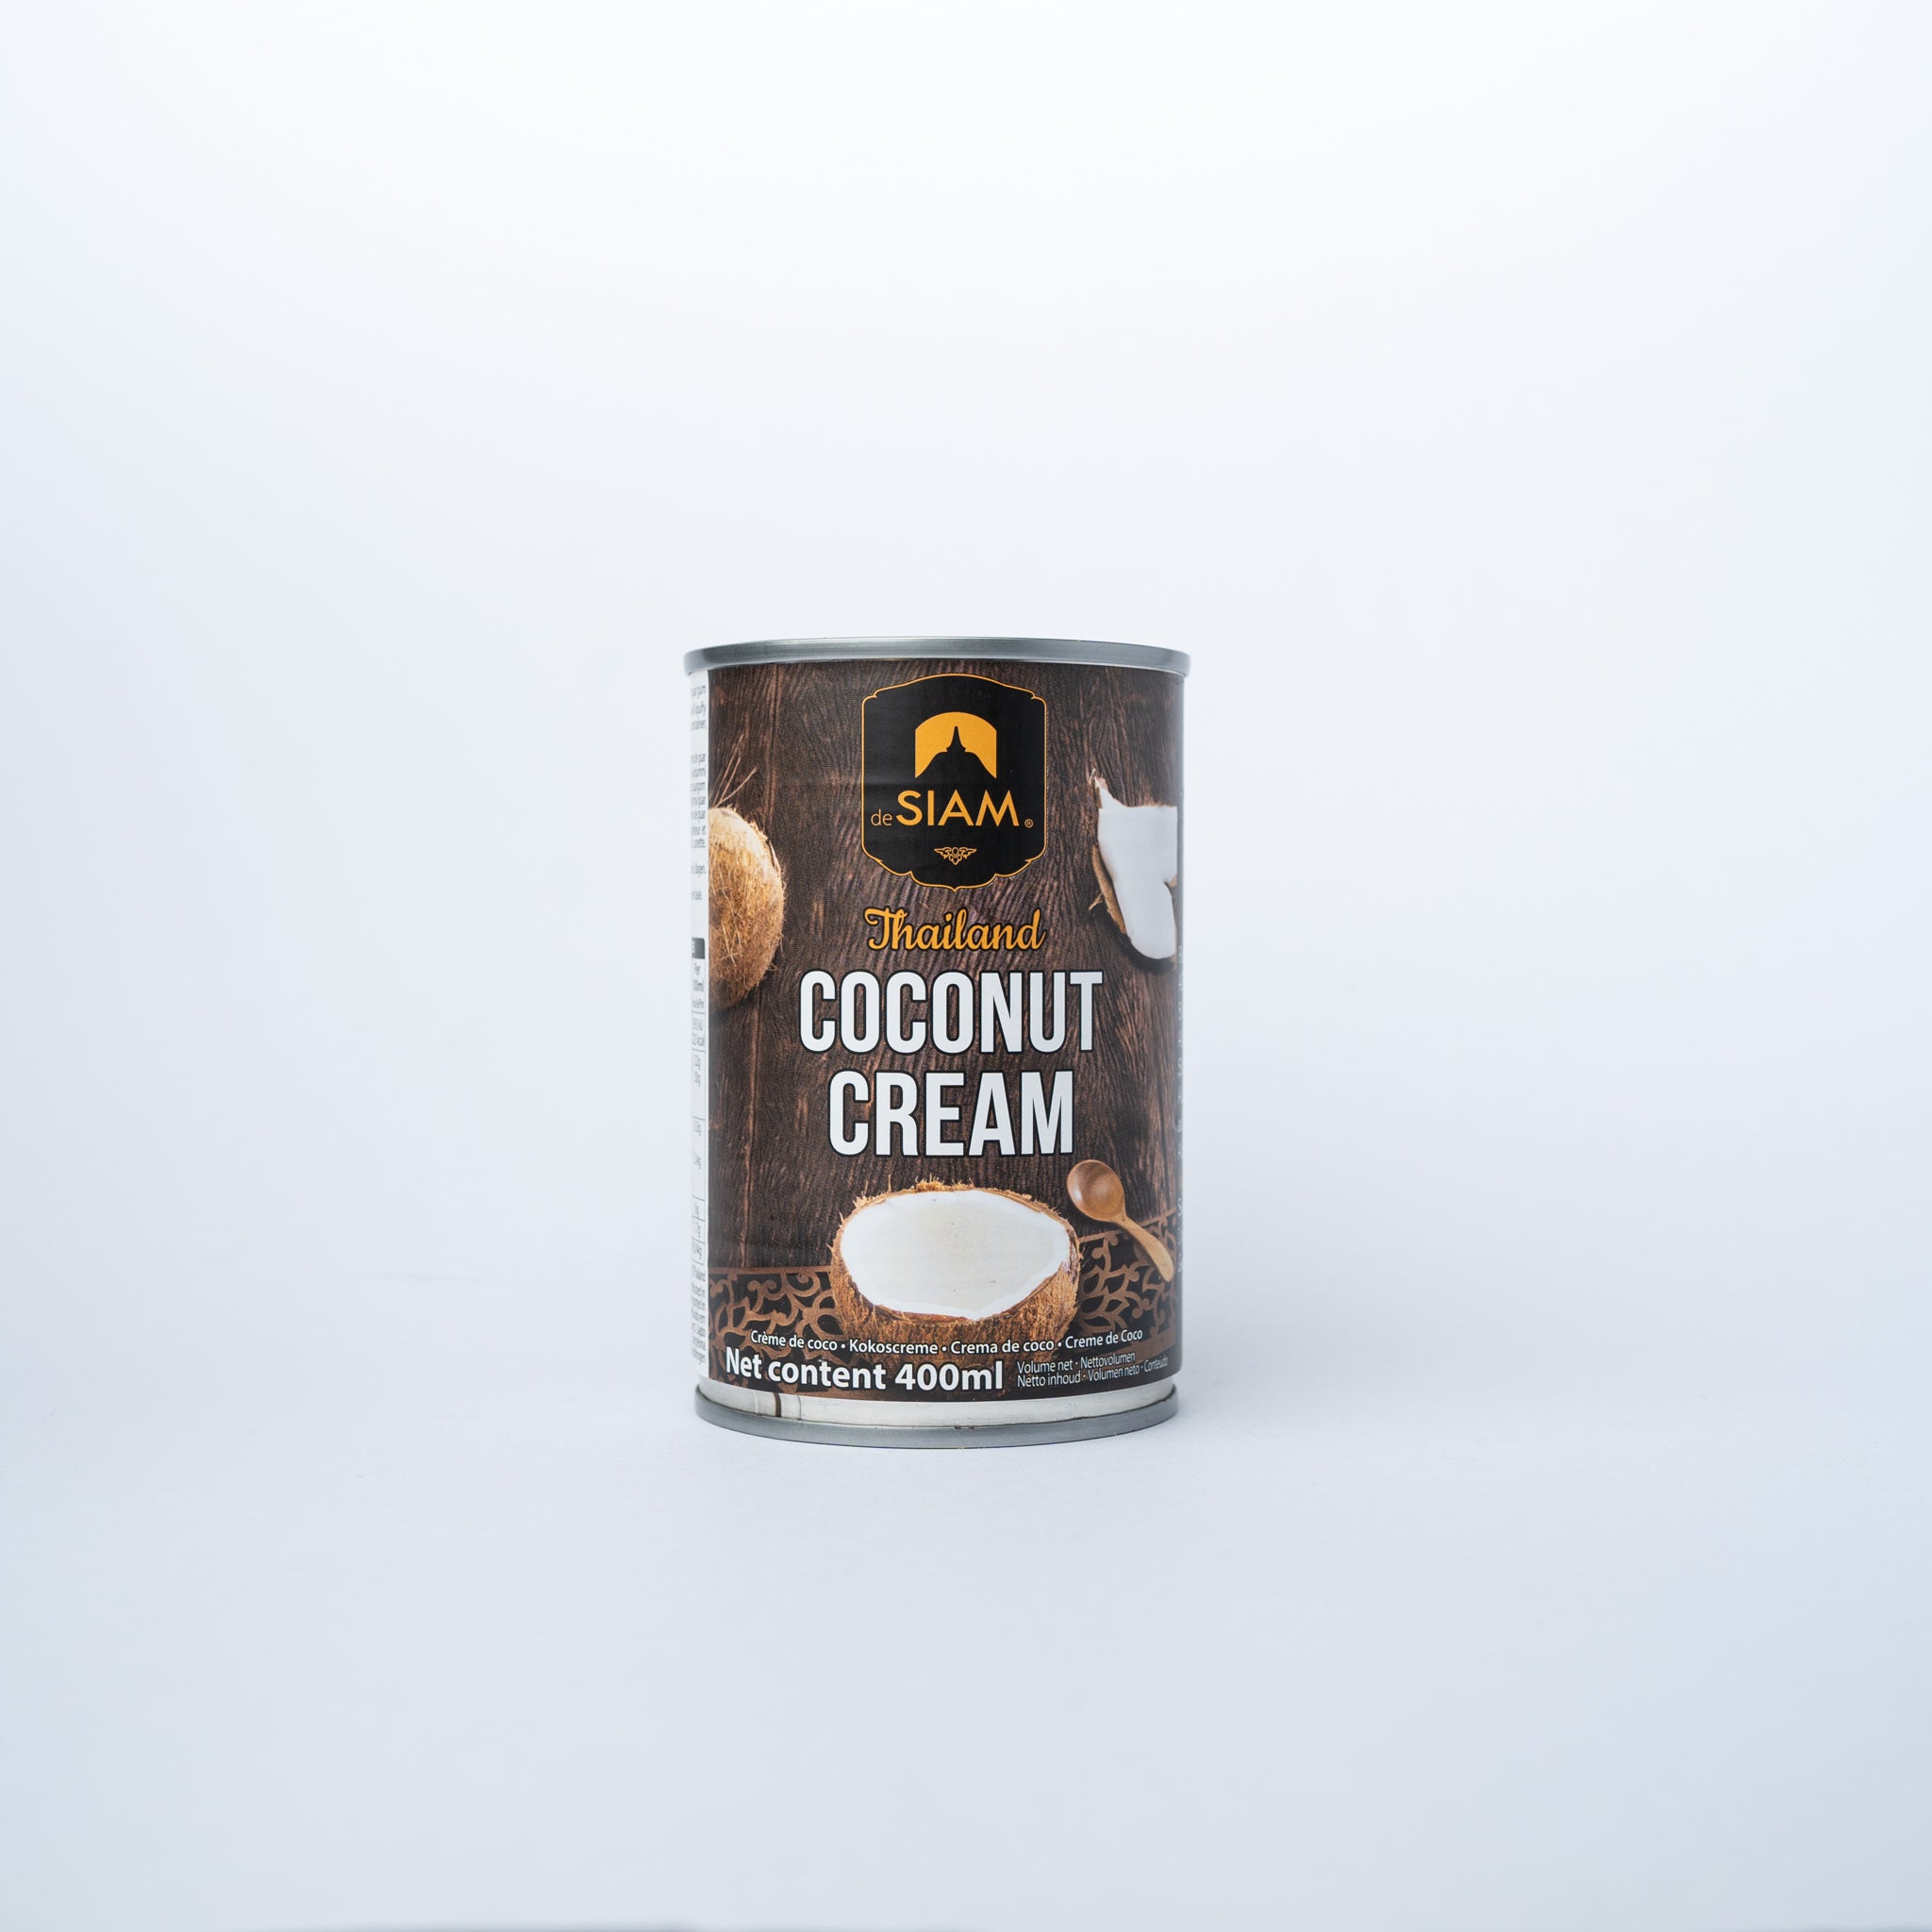 A 400g can of 	 deSiam Coconut Cream.